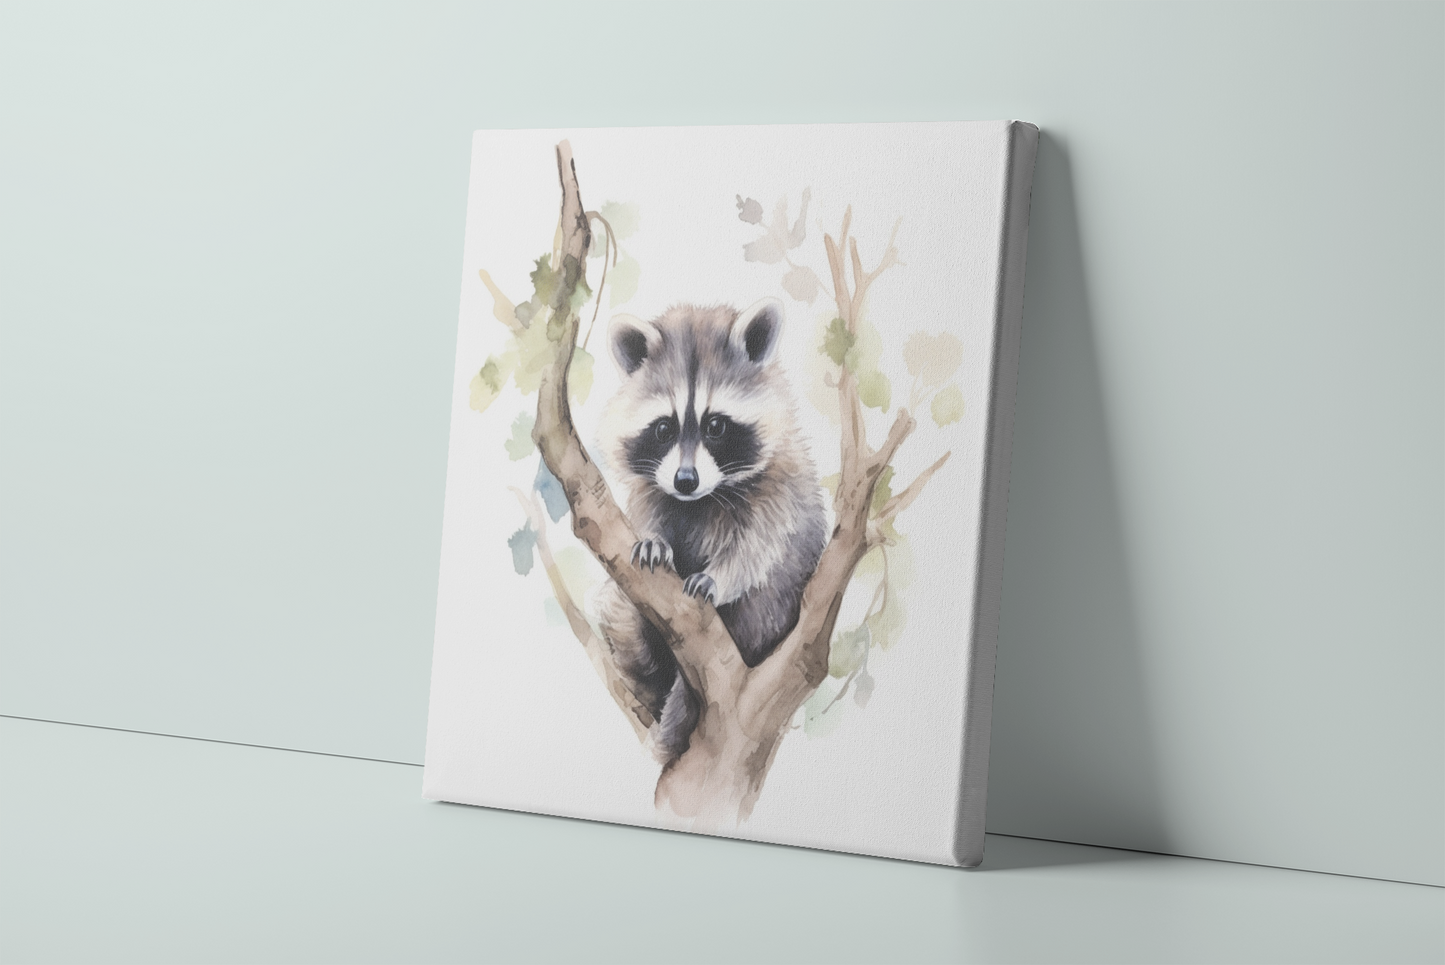 Raccoon Canvas Wall Art, Watercolor Raccoon Painting, Raccoon in Tree, Nature Canvas Art, Raccoon Lover Gift, Baby Raccoon Canvas Print